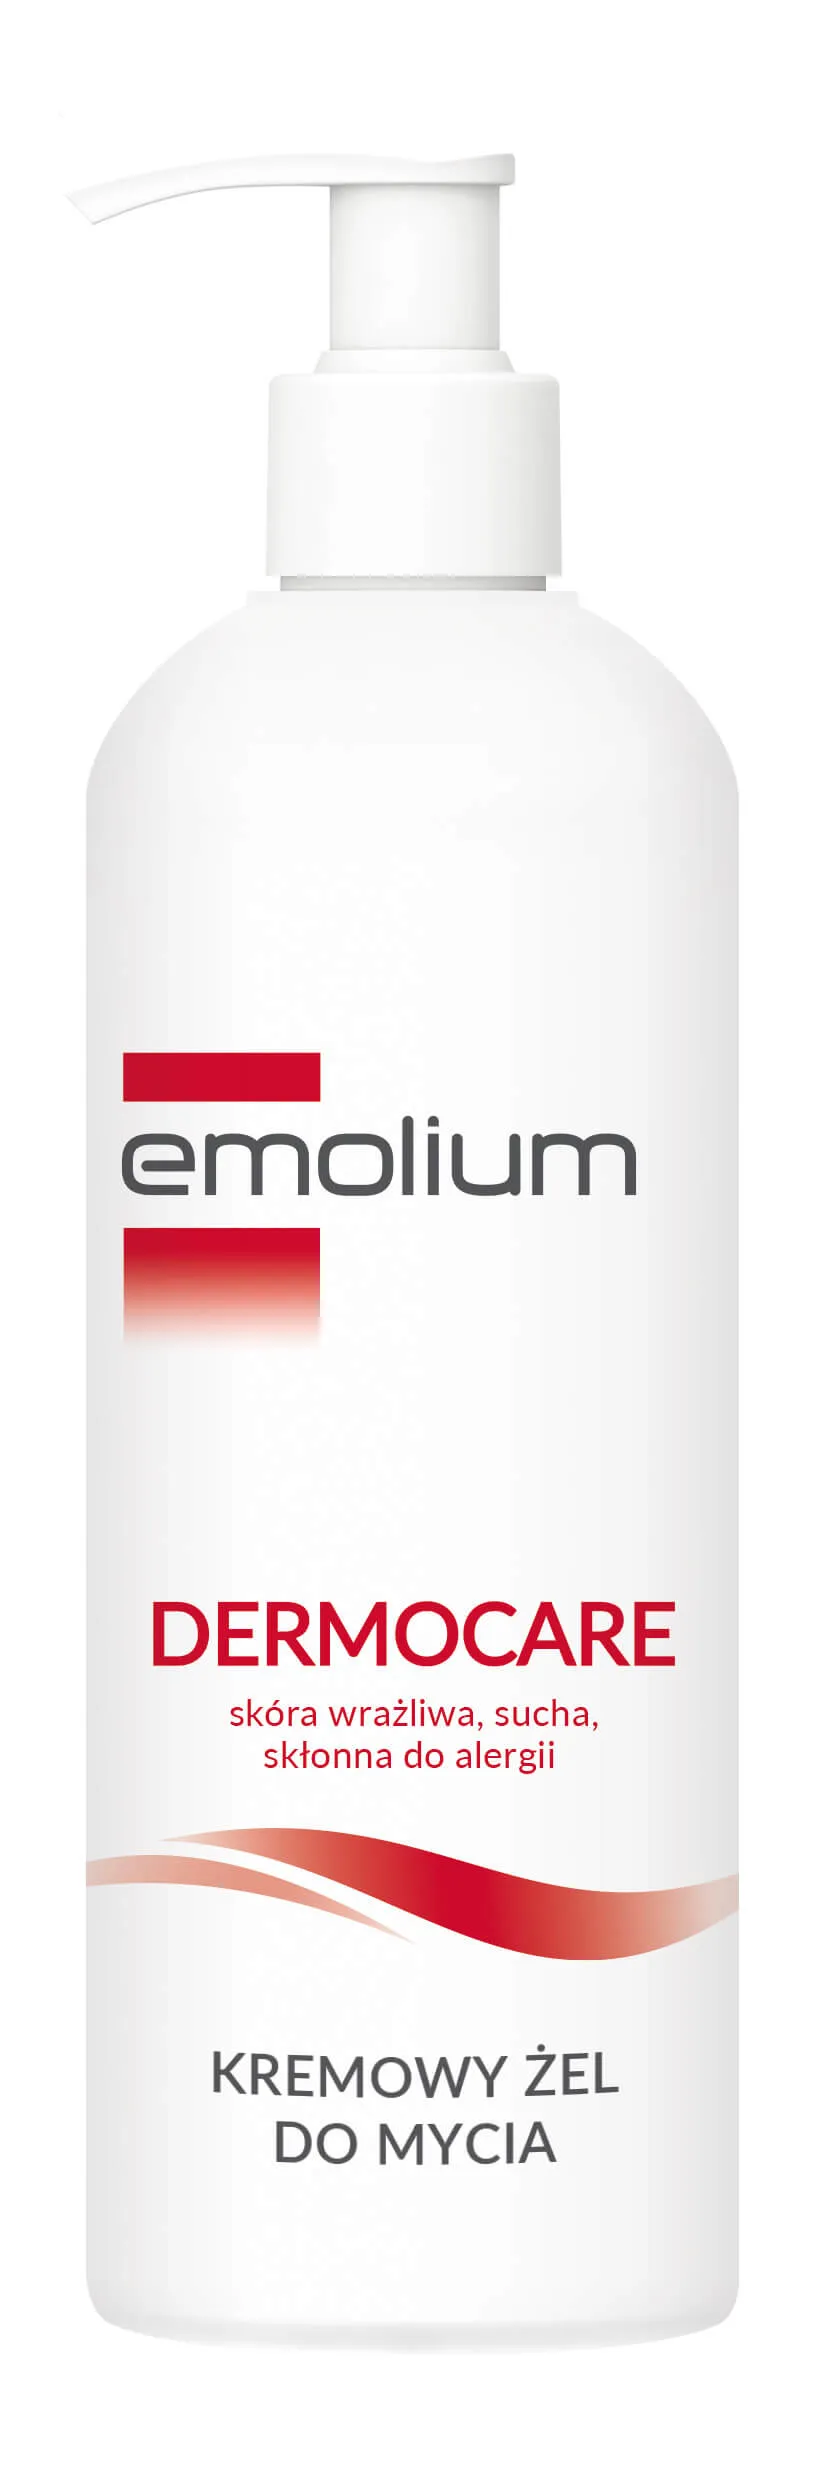 Emolium Dermocare, kremowy żel do mycia, 400 ml 